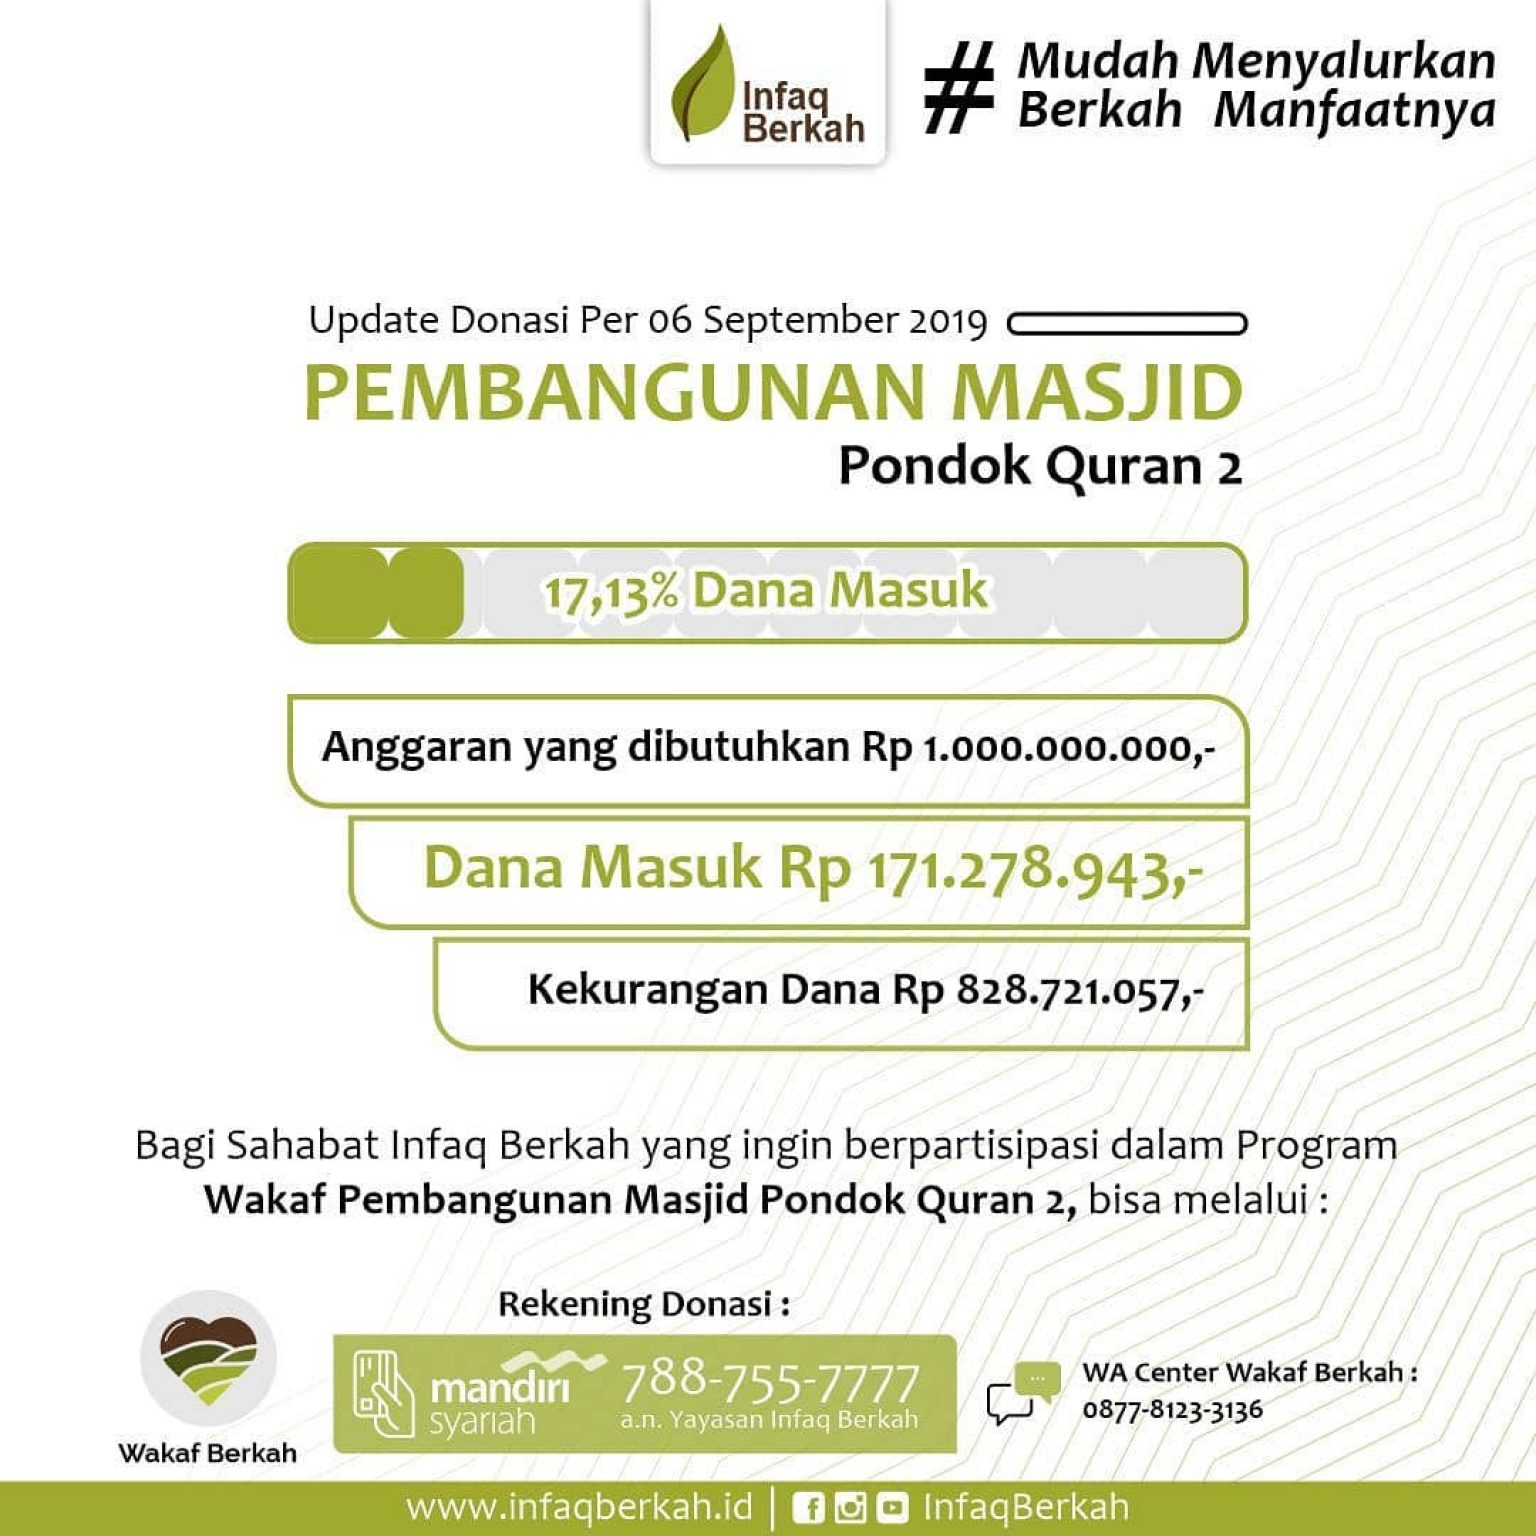 Update Donasi Pembangunan Masjid Pondok Quran II - Infaq Berkah Qurani